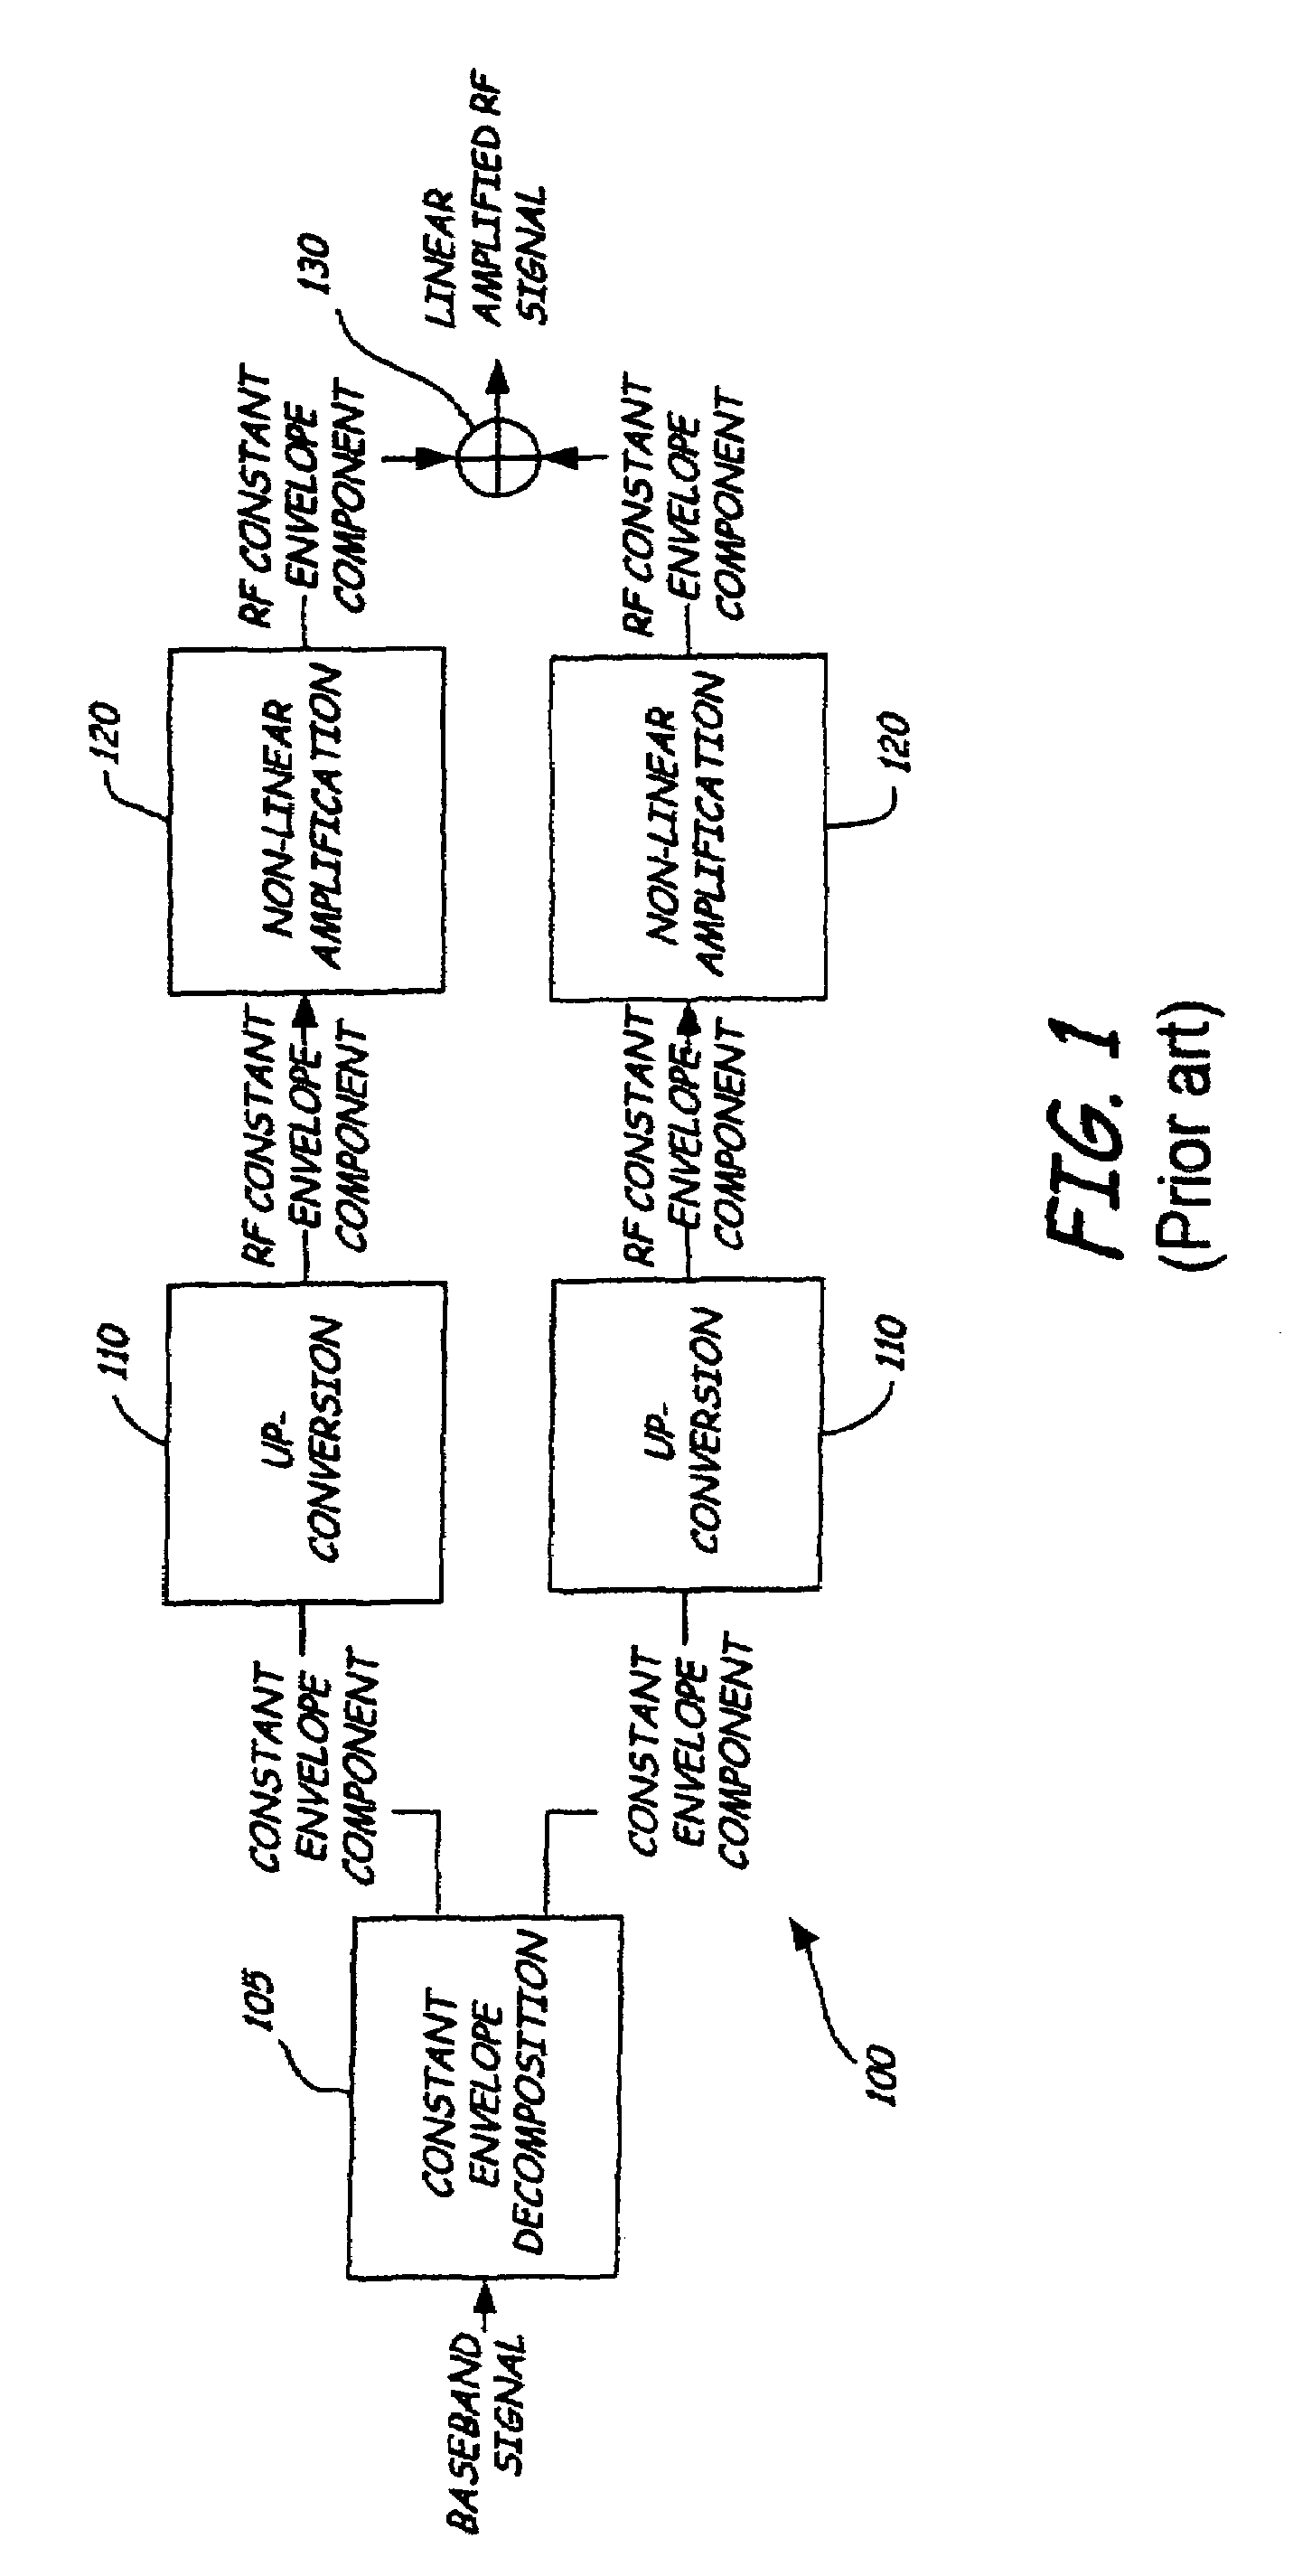 Quadrature LINC transmission method and apparatus